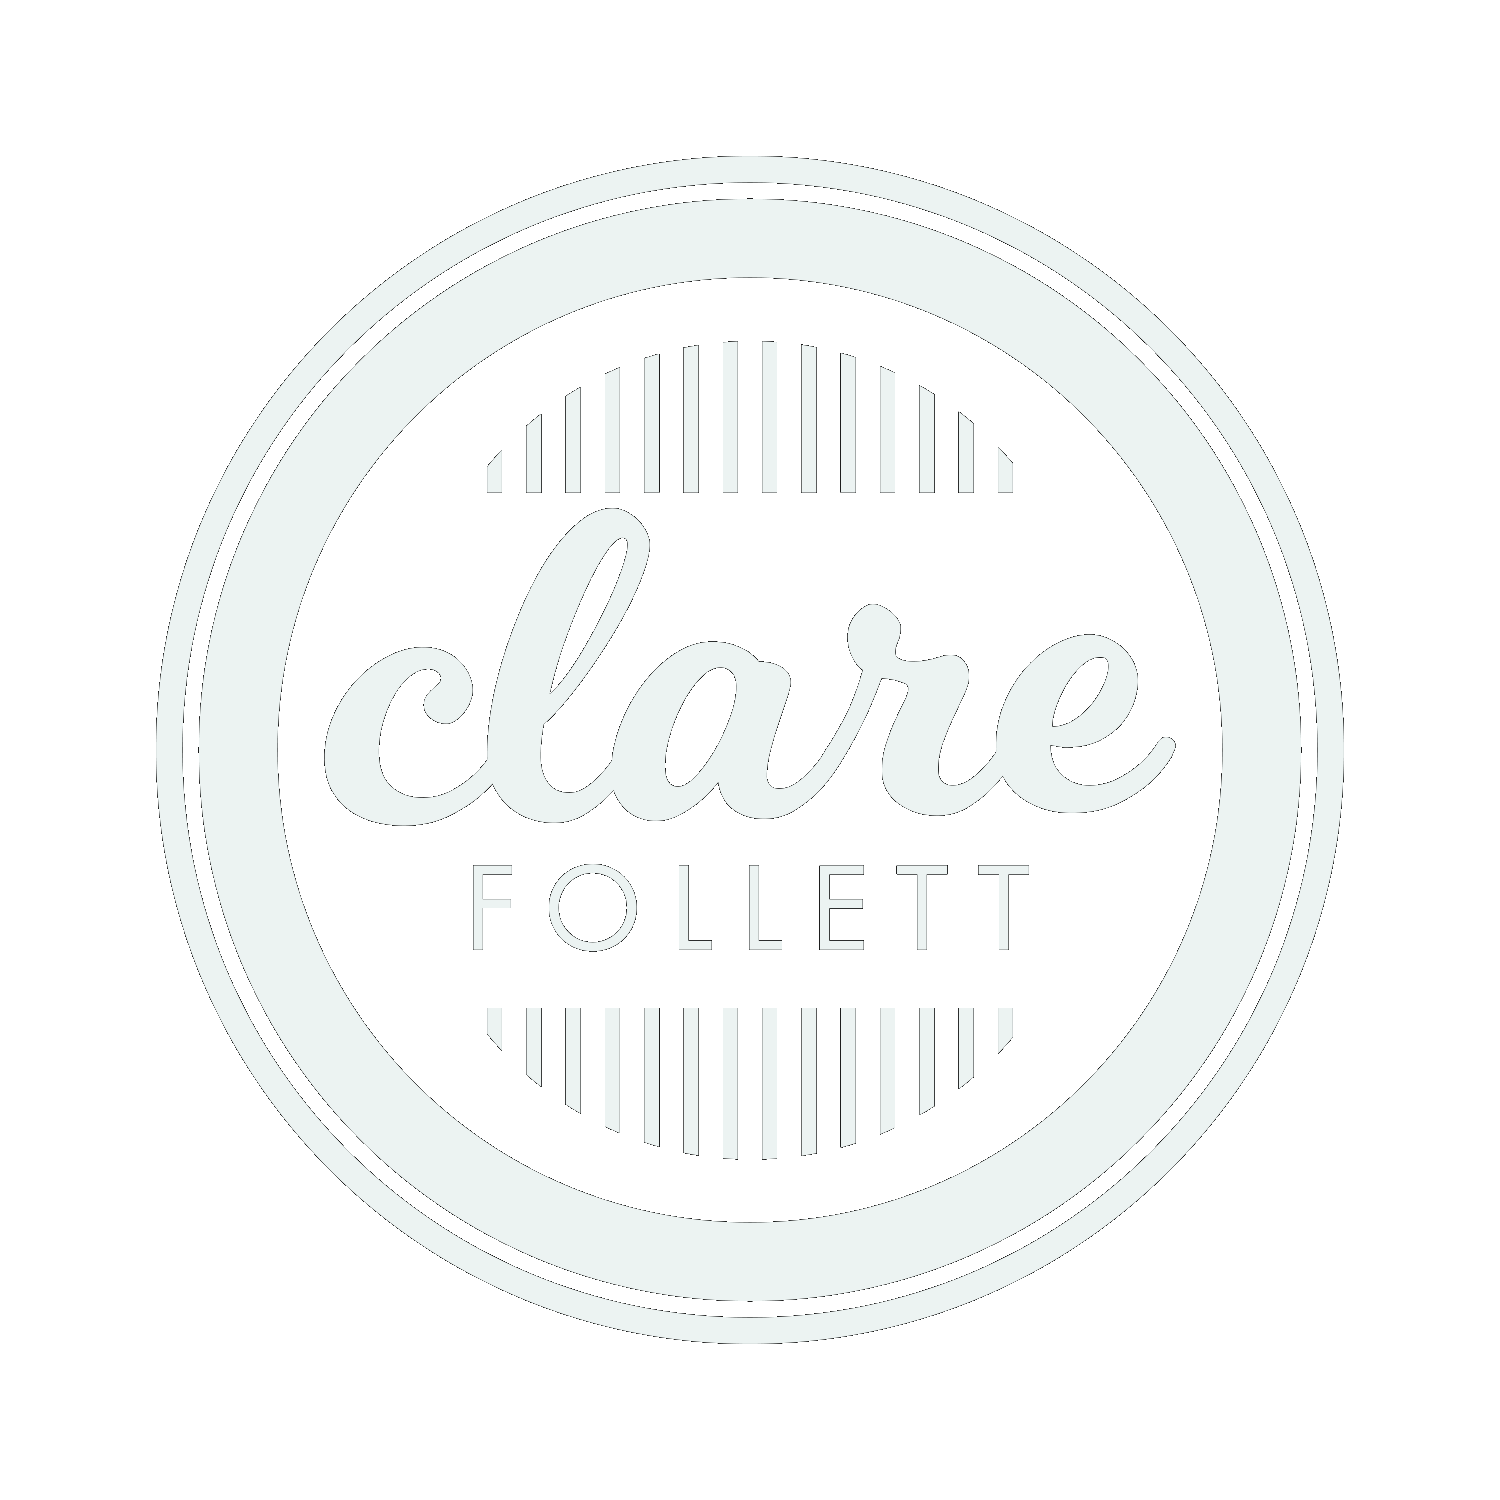 Clare Follett